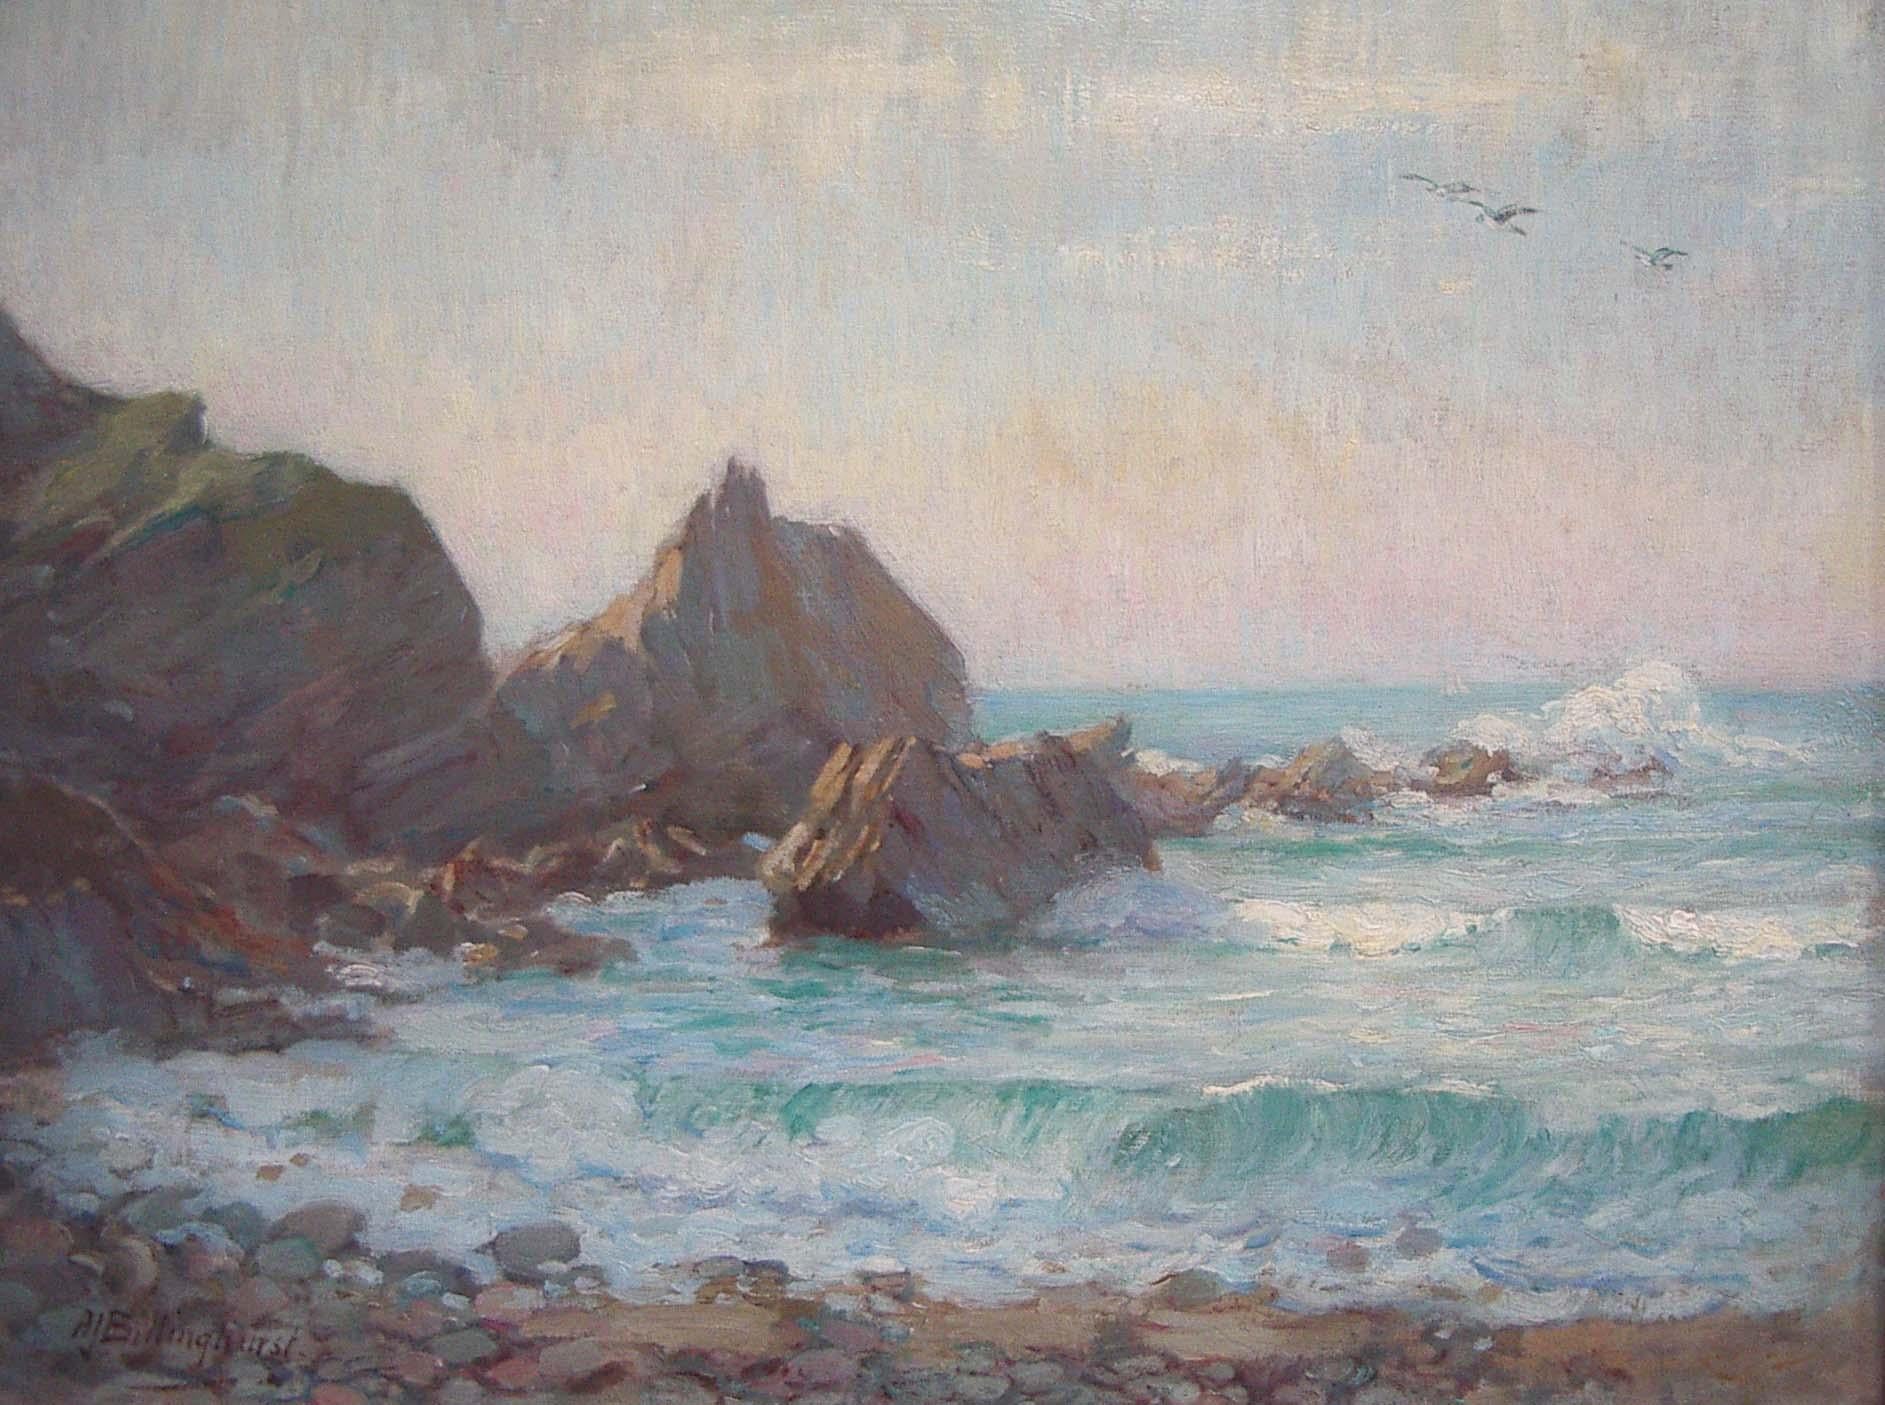 Kynance Cove. Huile impressionniste "Cornwall" sur une scène de plage, vers 1930